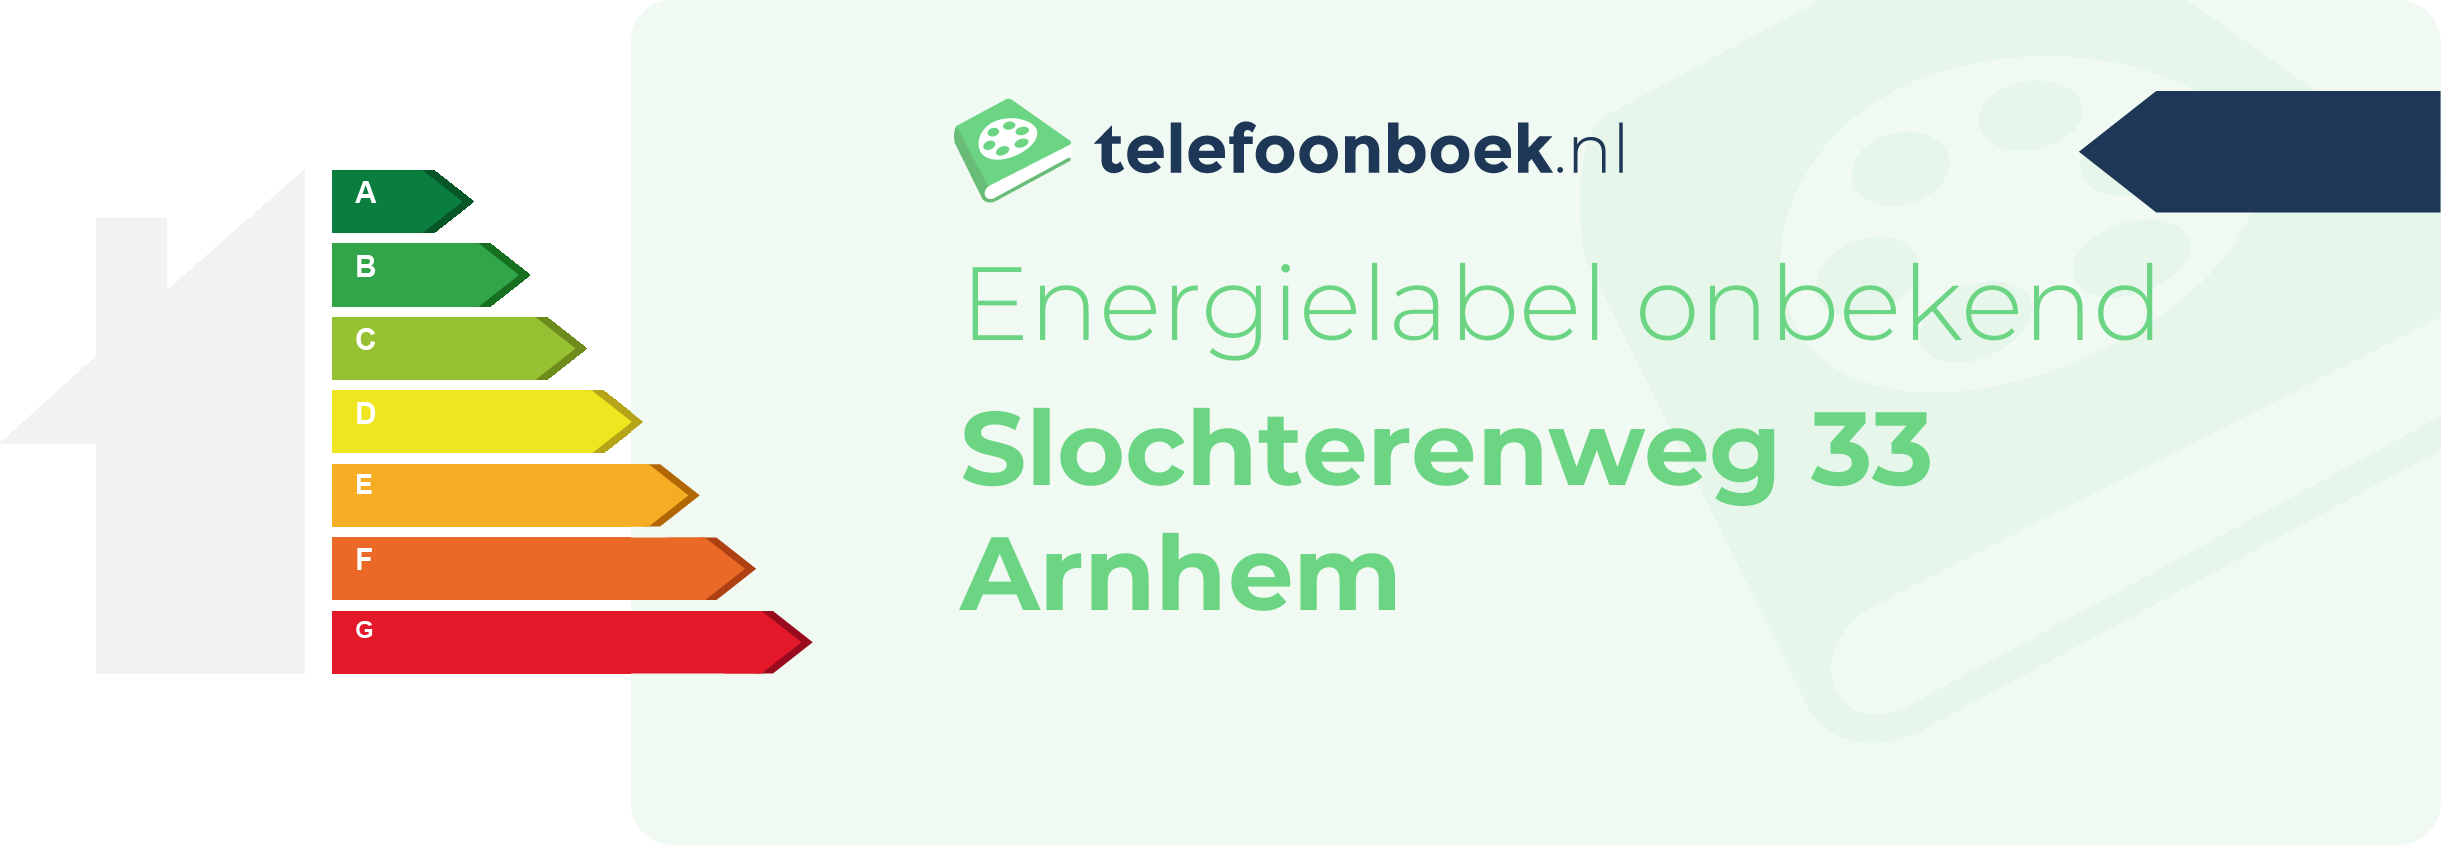 Energielabel Slochterenweg 33 Arnhem